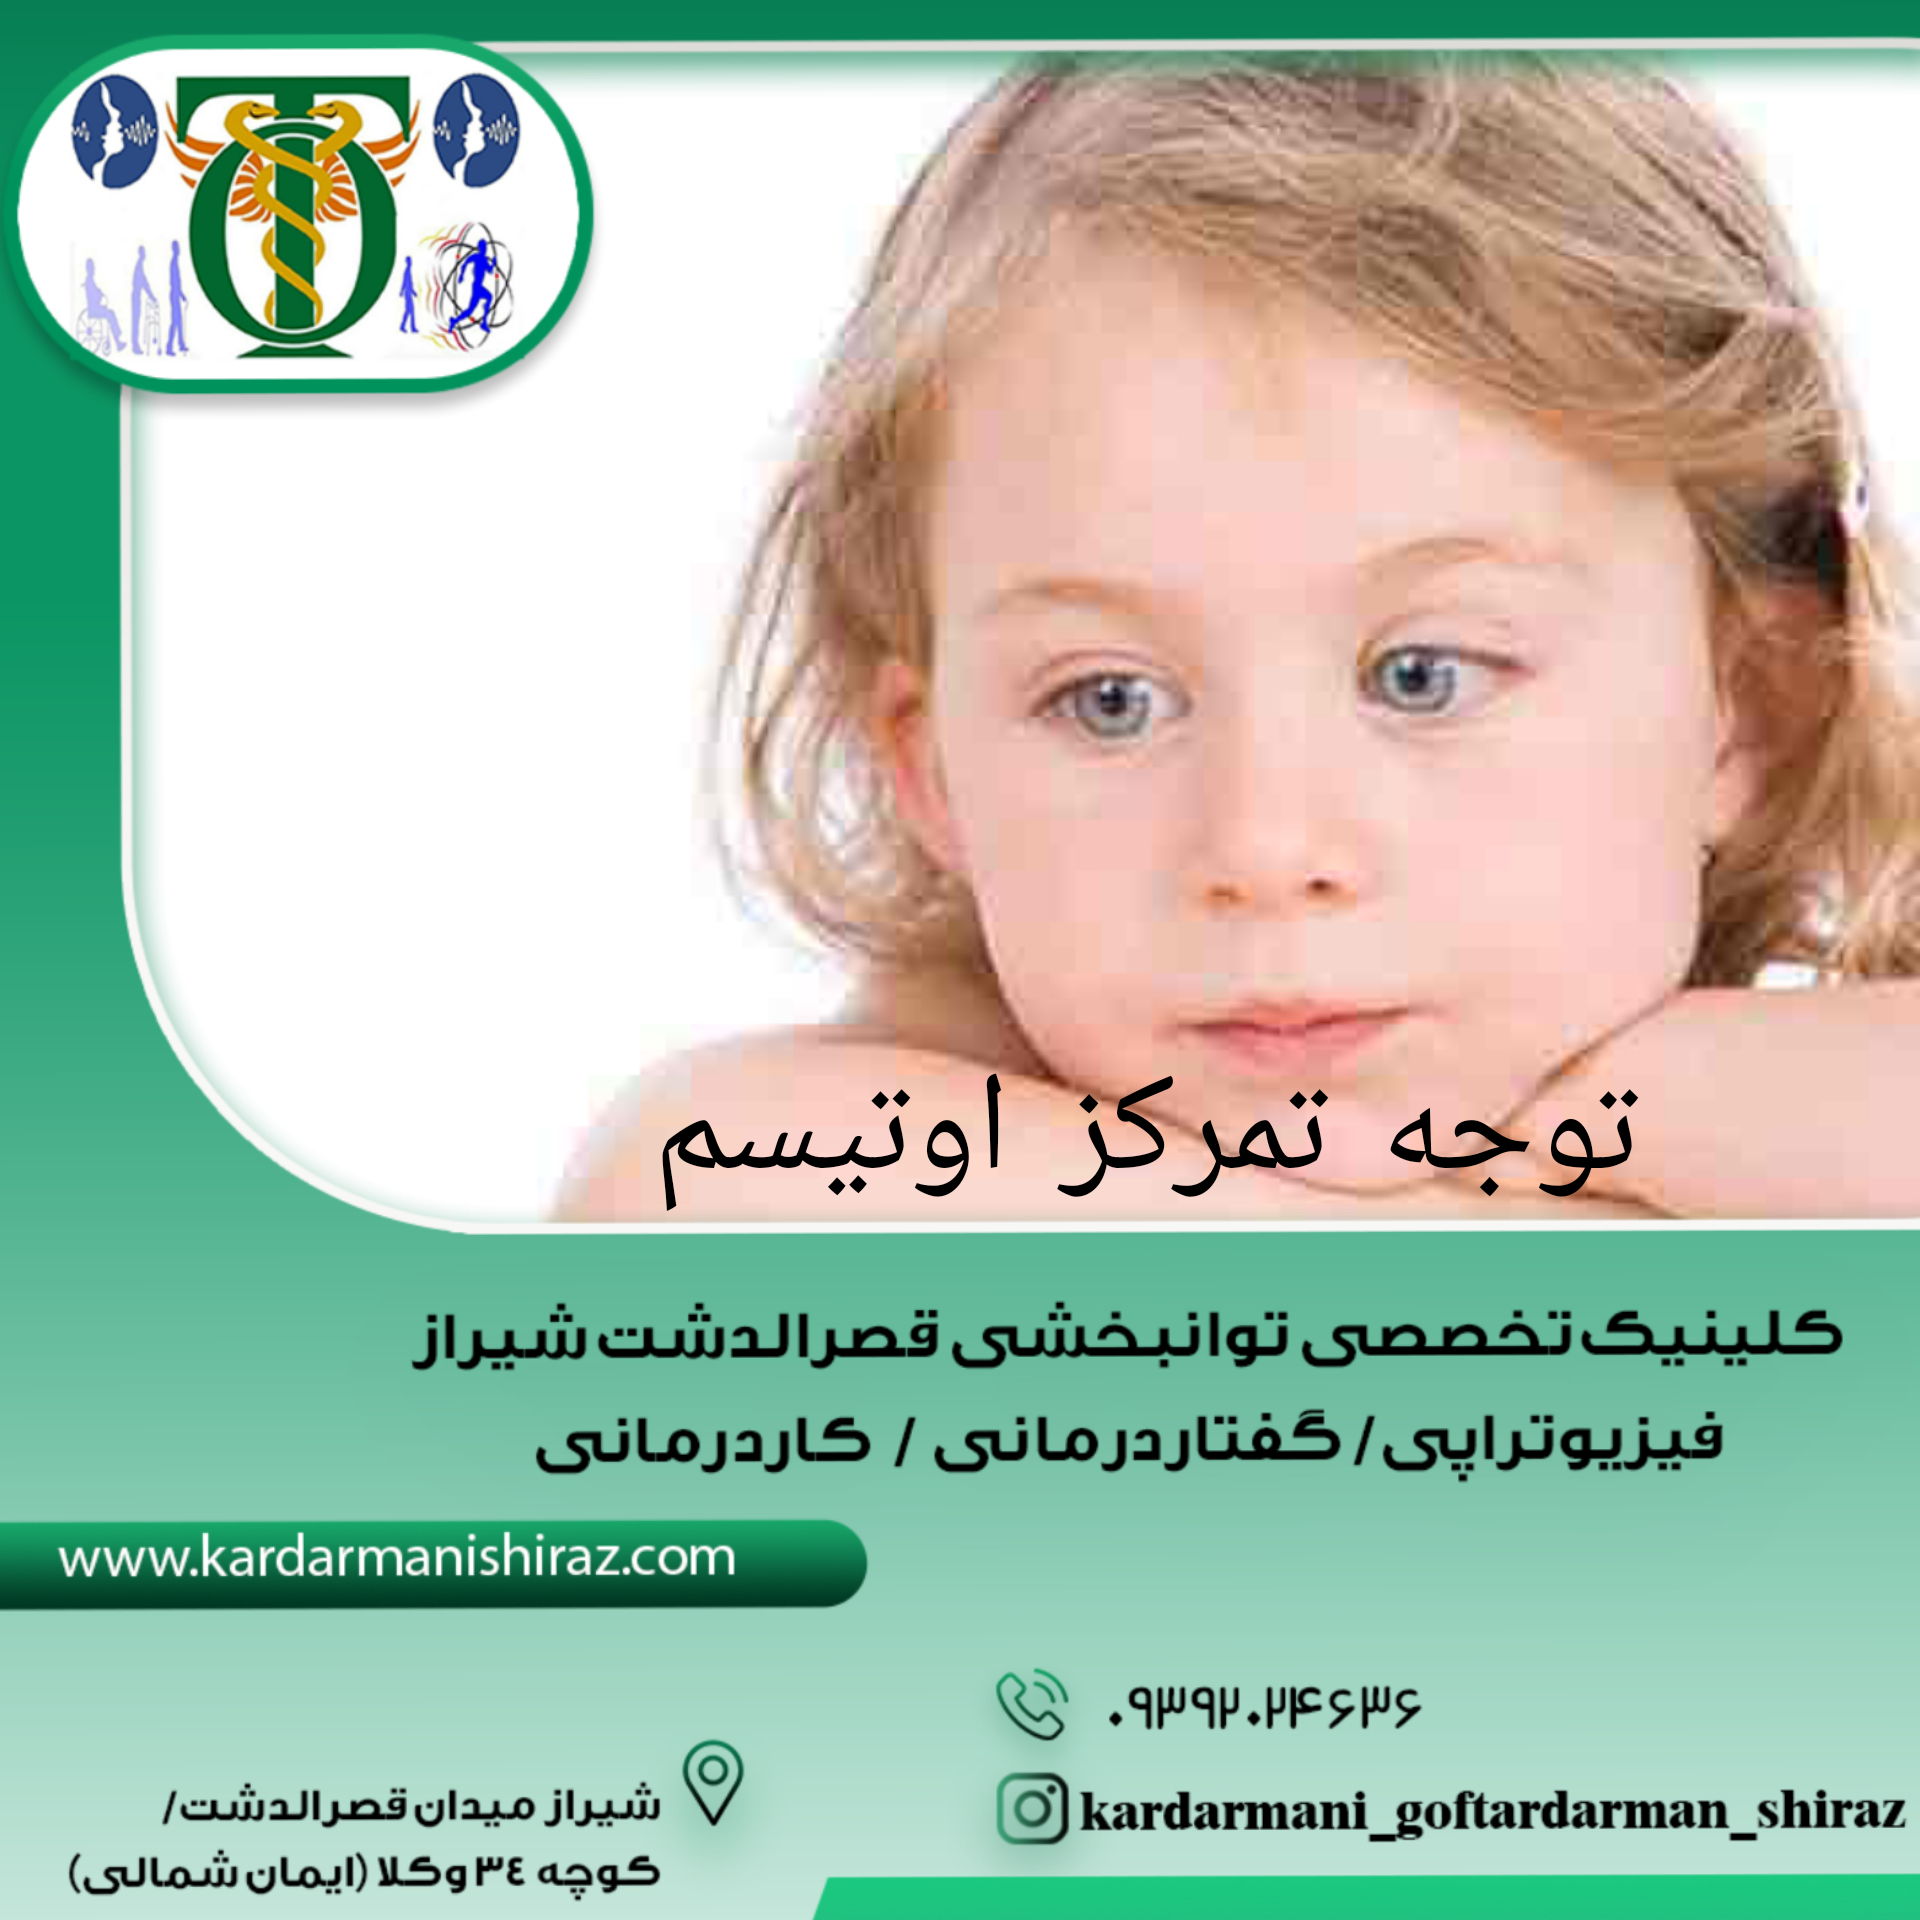 تمرینات افزایش توجه تمرکز در کودکان اوتیسم شیراز_کاردرمانی گفتاردرمانی